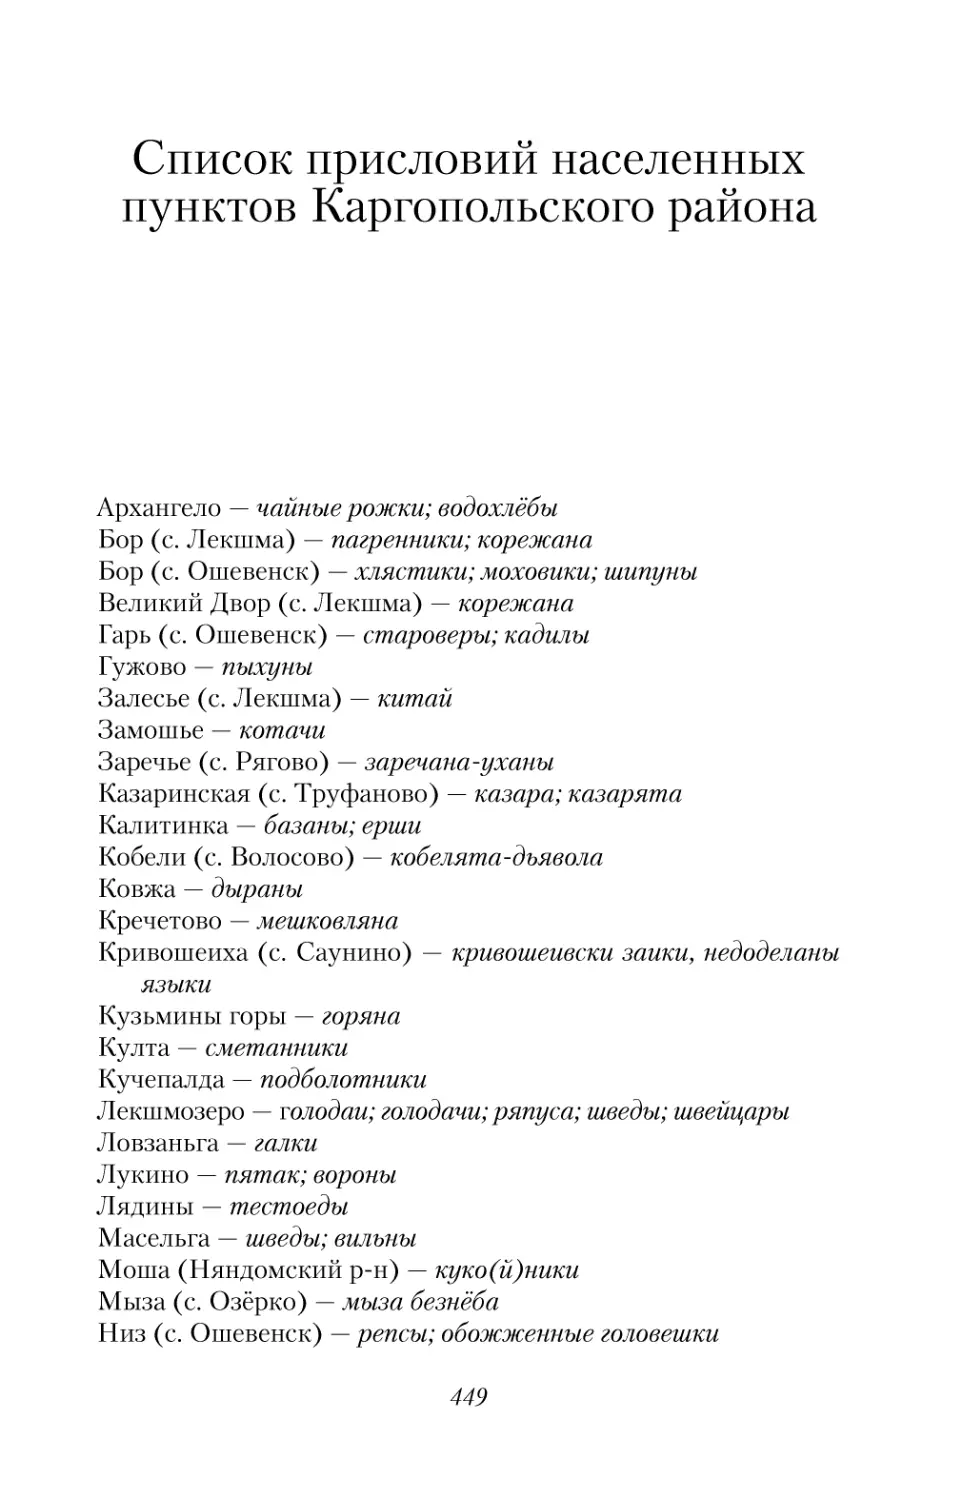 Список присловий населённых пунктов Каргопольского района